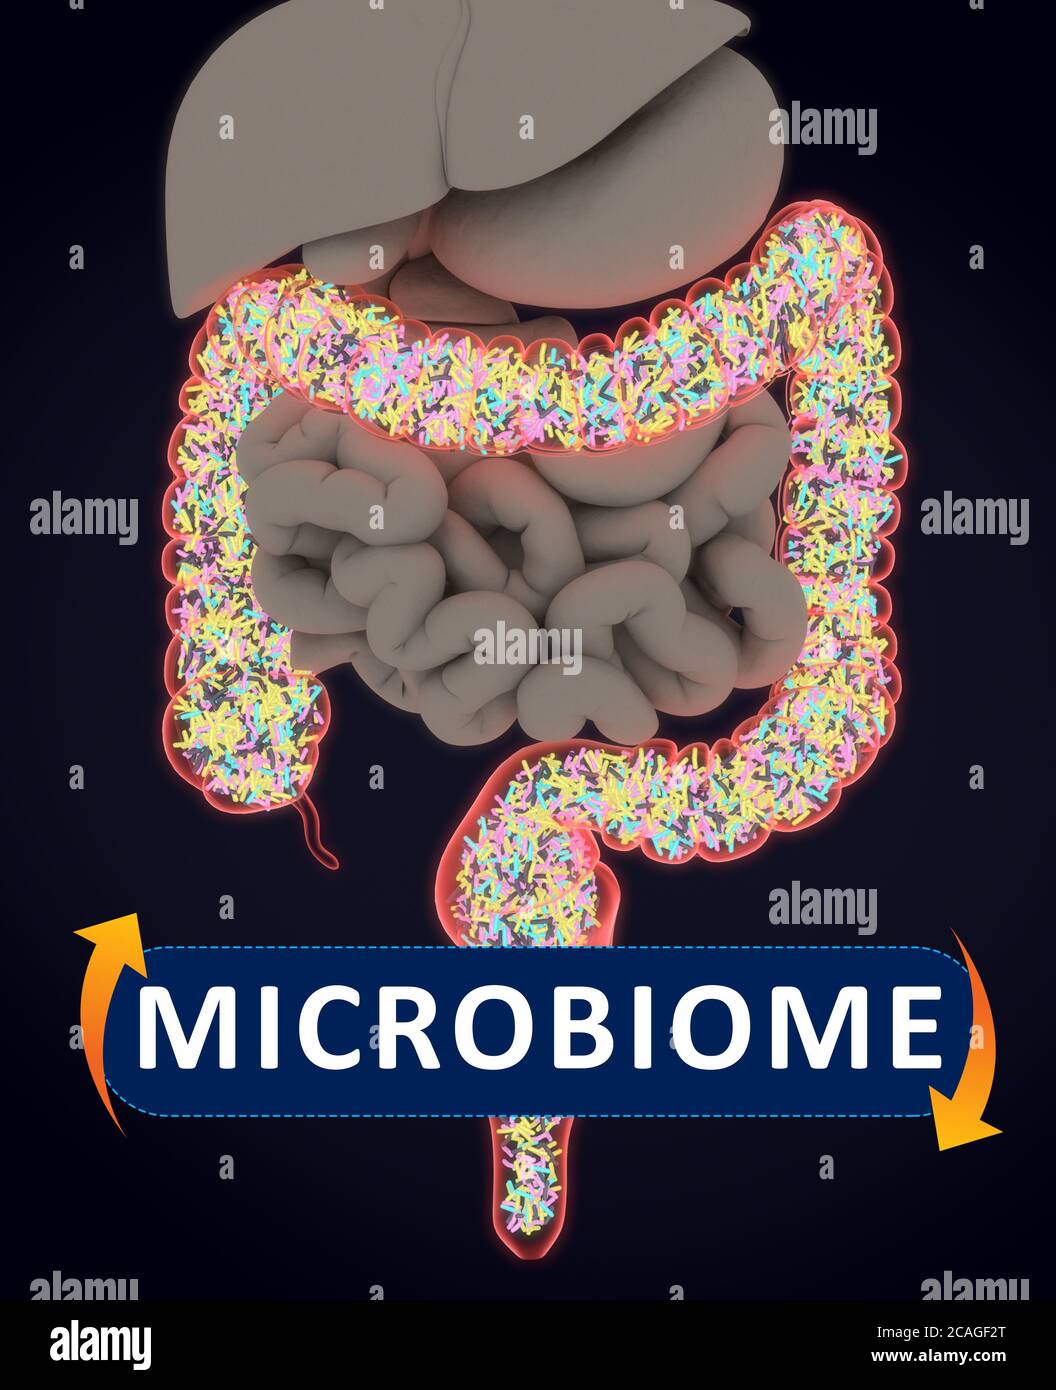 Darmbakterien, Mikrobiom. Bakterien im Dickdarm, Konzept, Darstellung. 3D-Illustration. Stockfoto